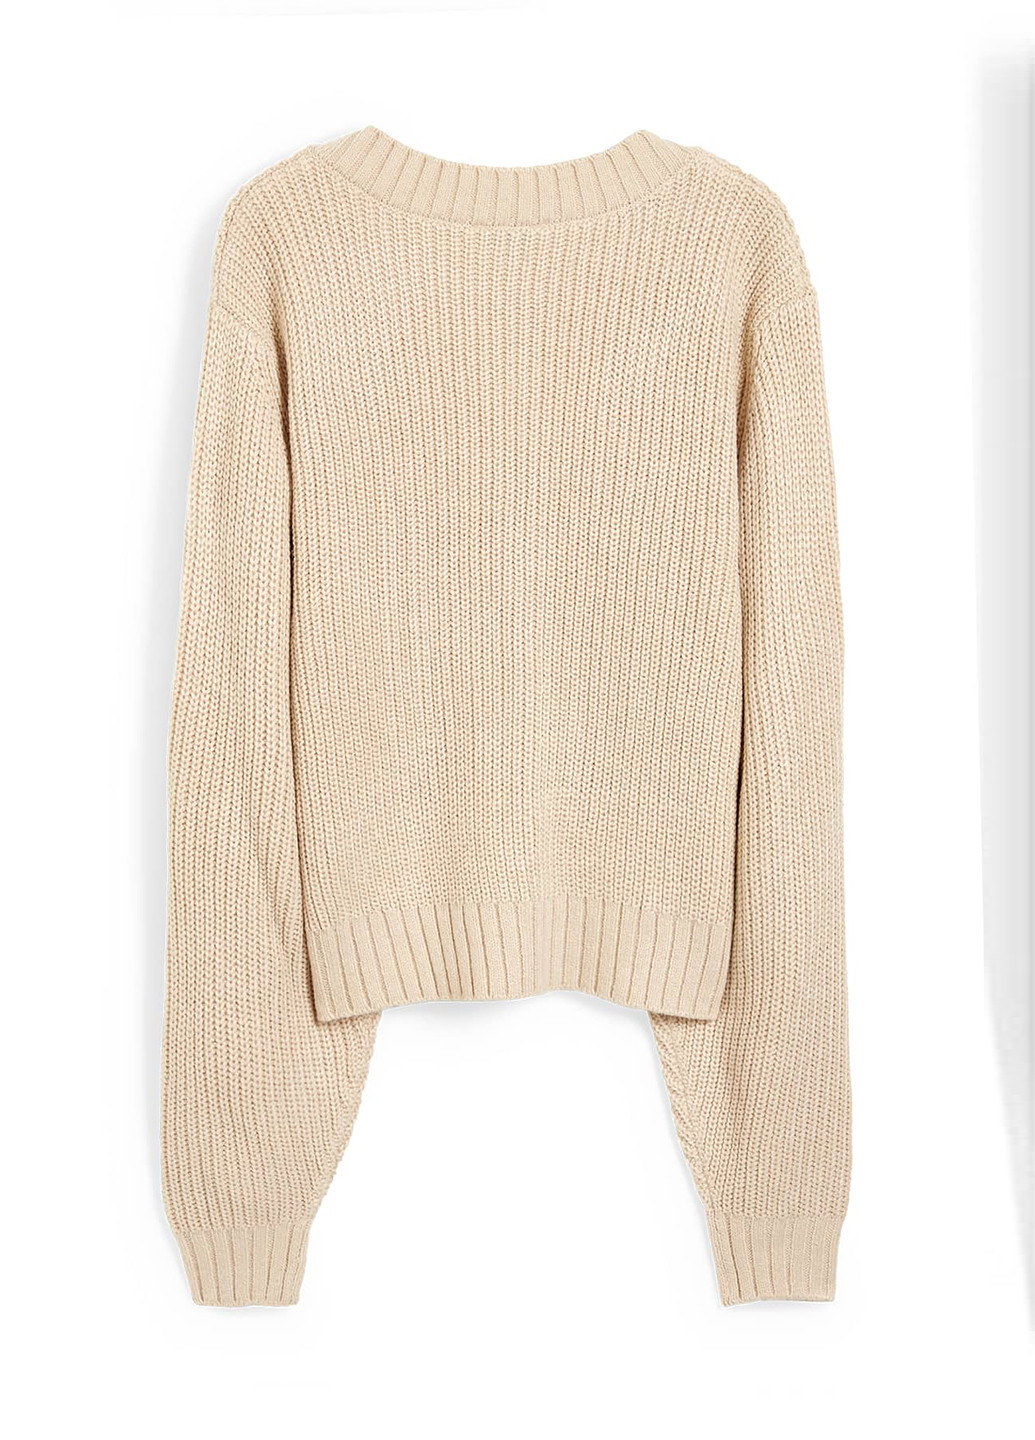 Пудровый демисезонный пуловер пуловер C&A